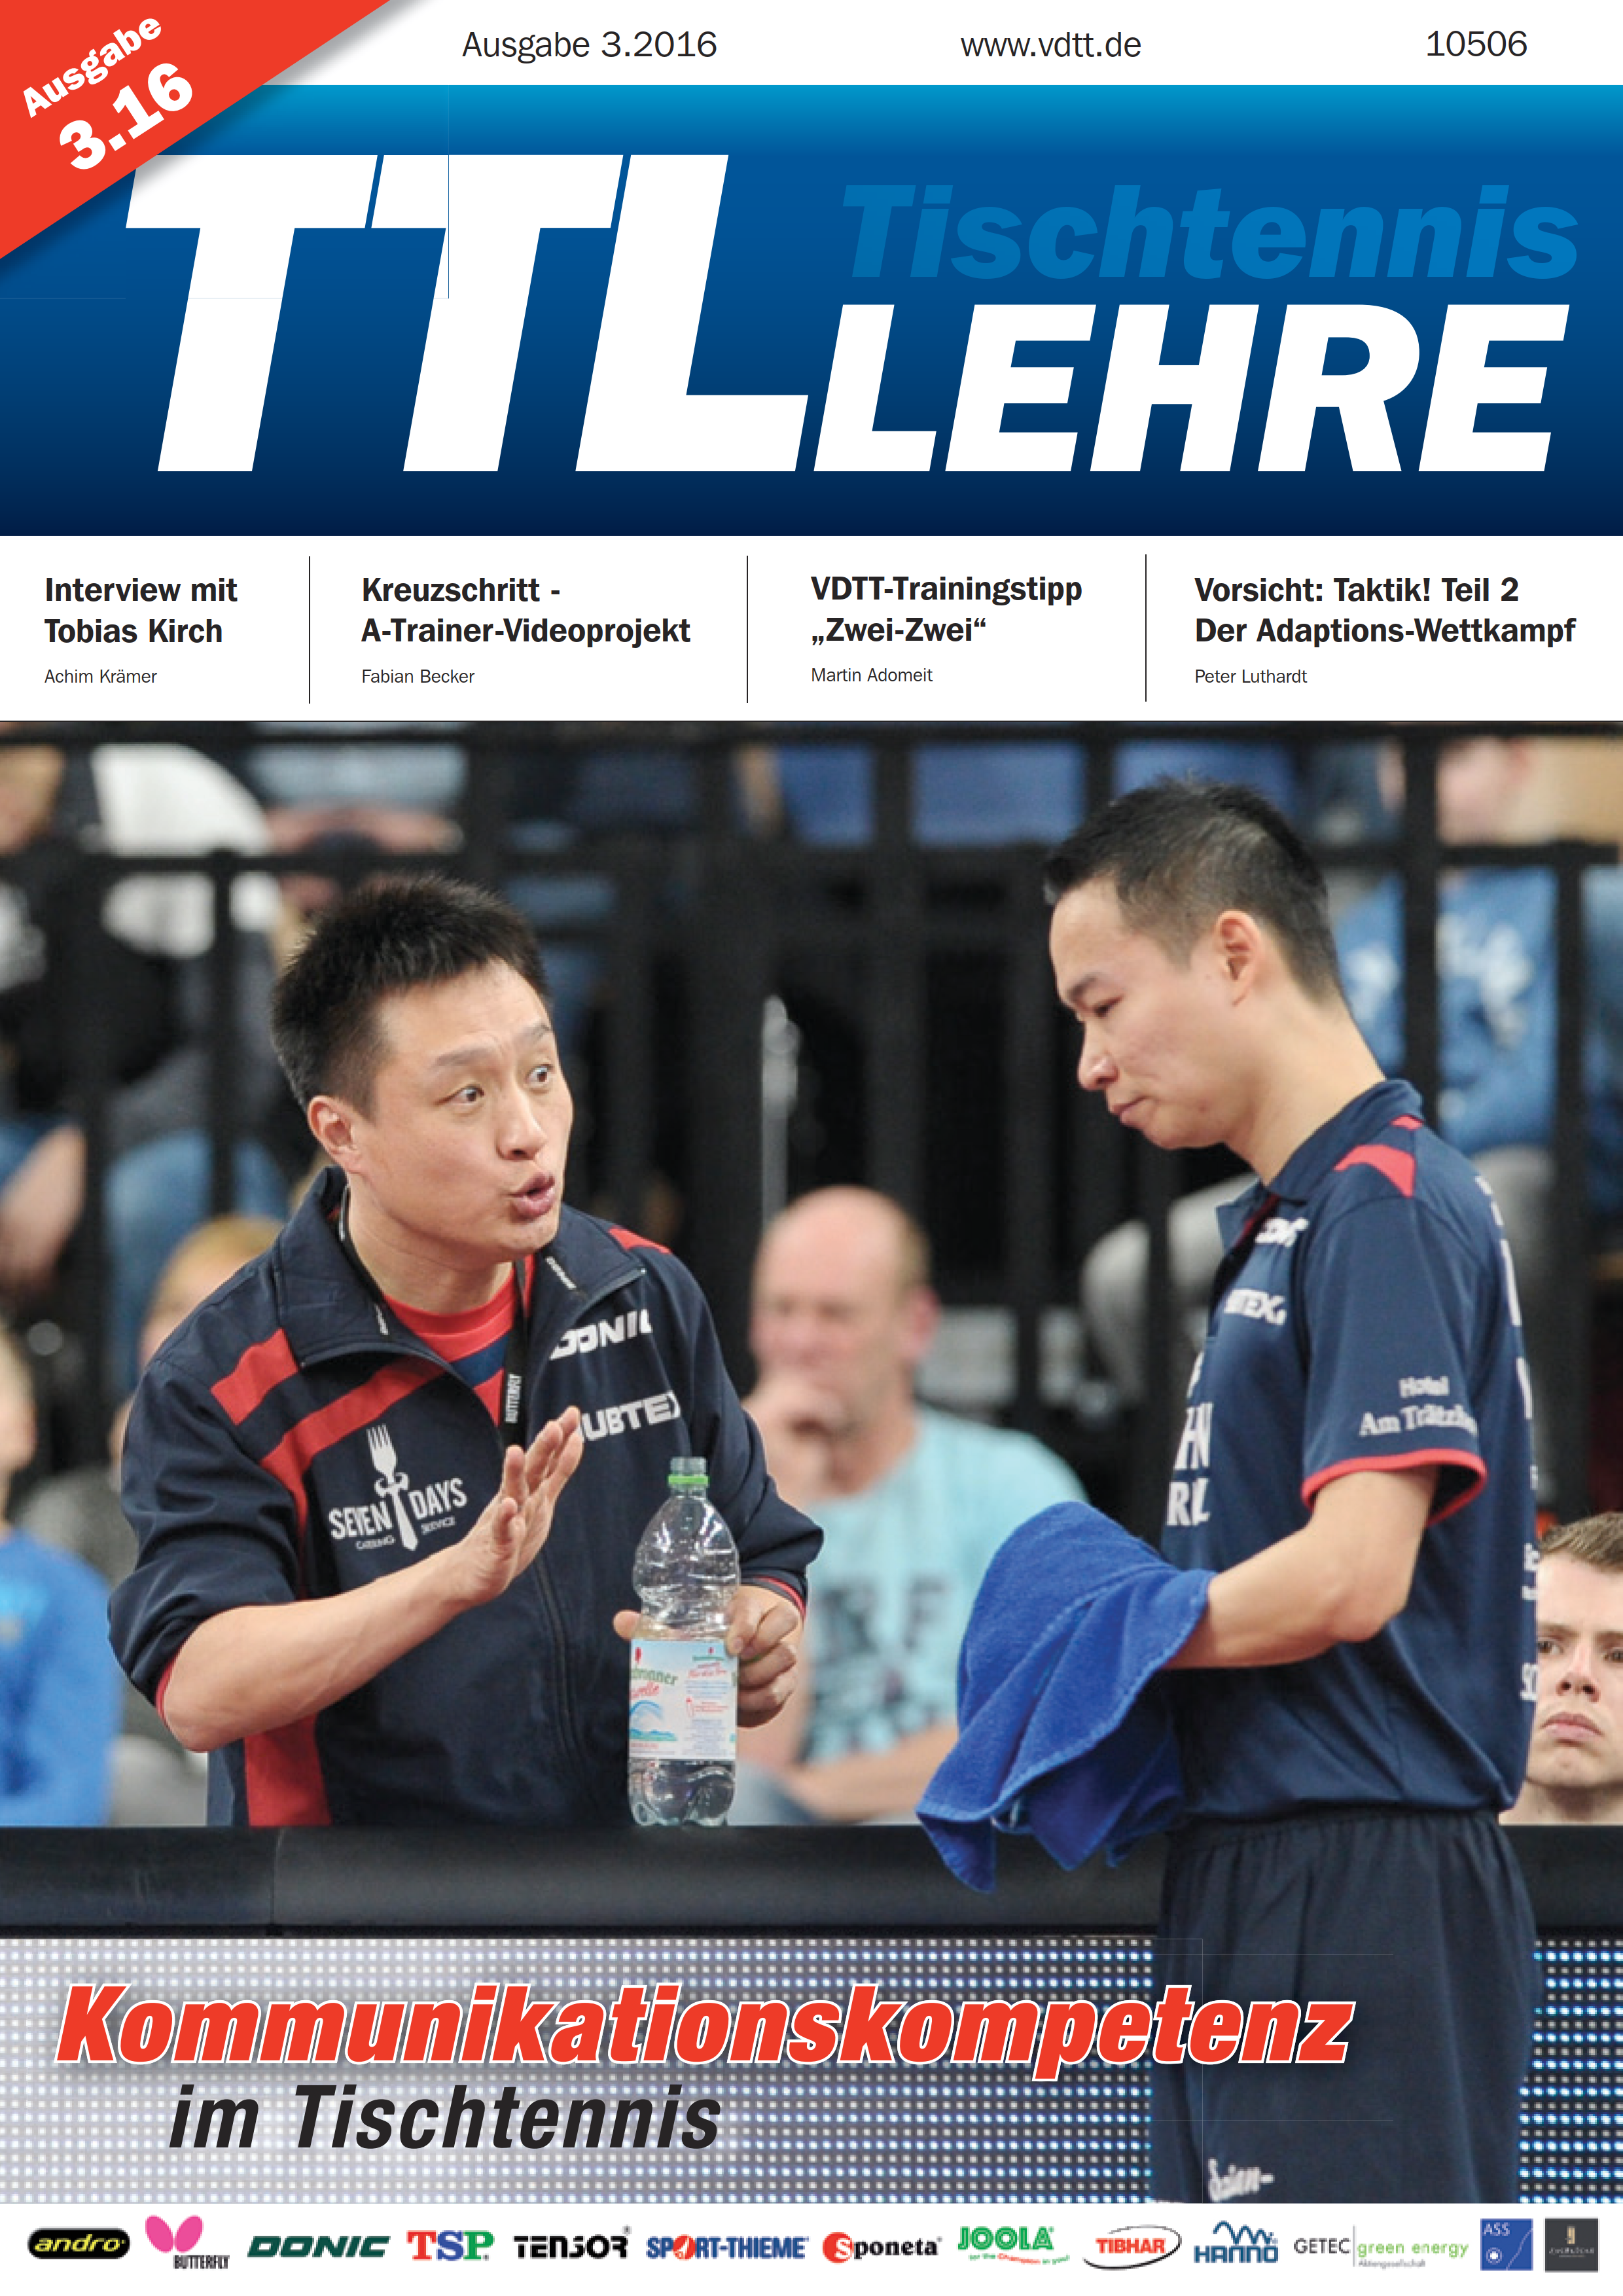 VDTT-Zeitschrift Tischtennislehre - Ausgabe: 2016-03